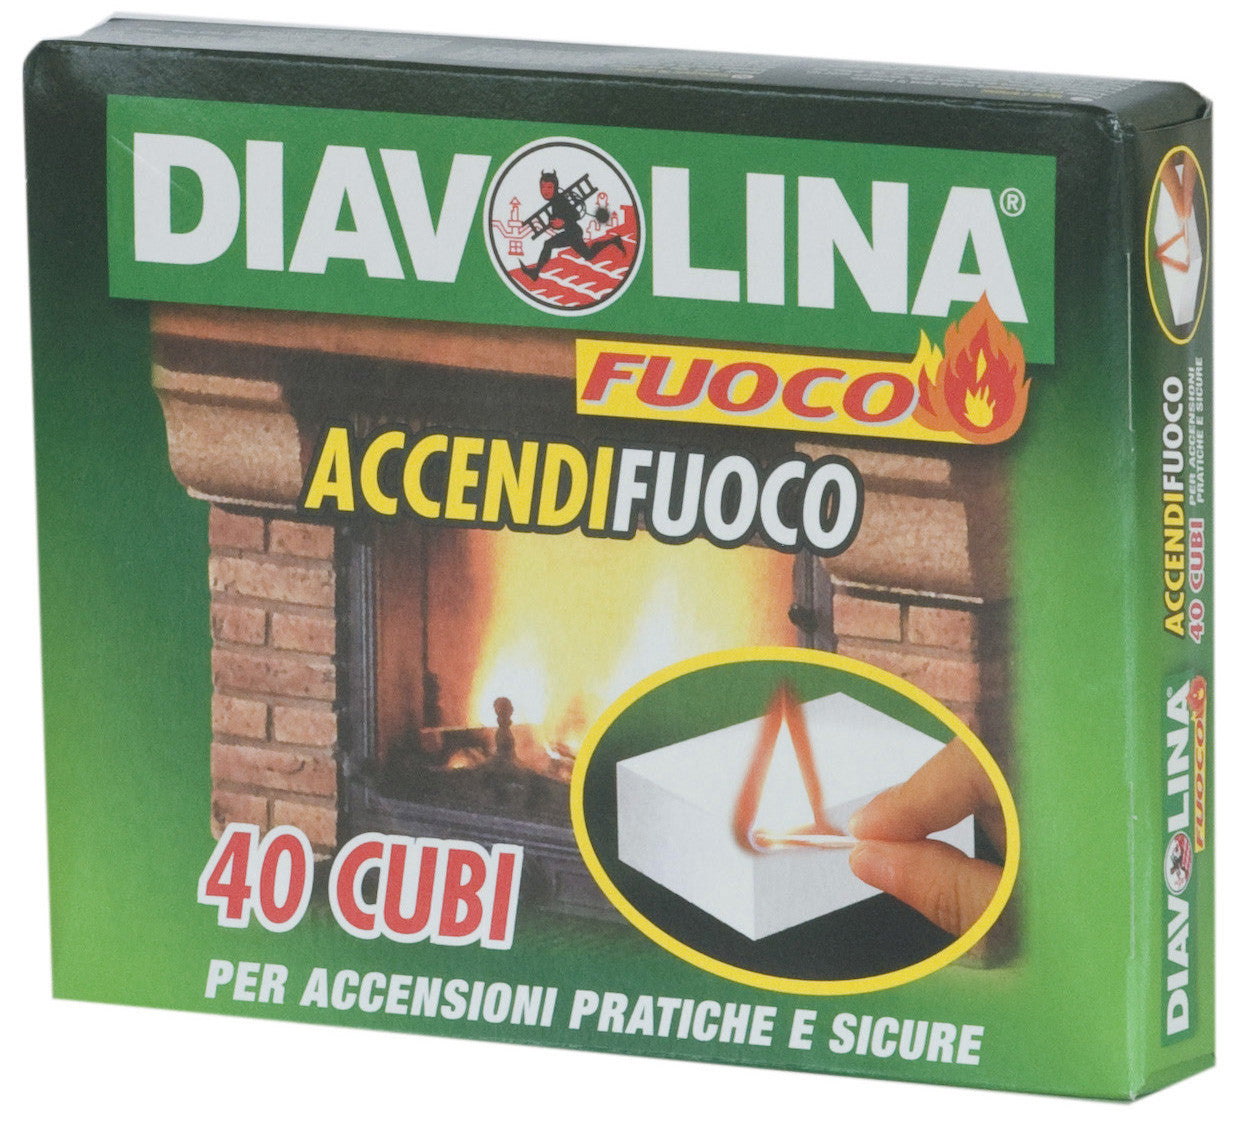 Accendifuoco 40 cubi diavolina art.15300 FACCO GIUSEPPE & C.